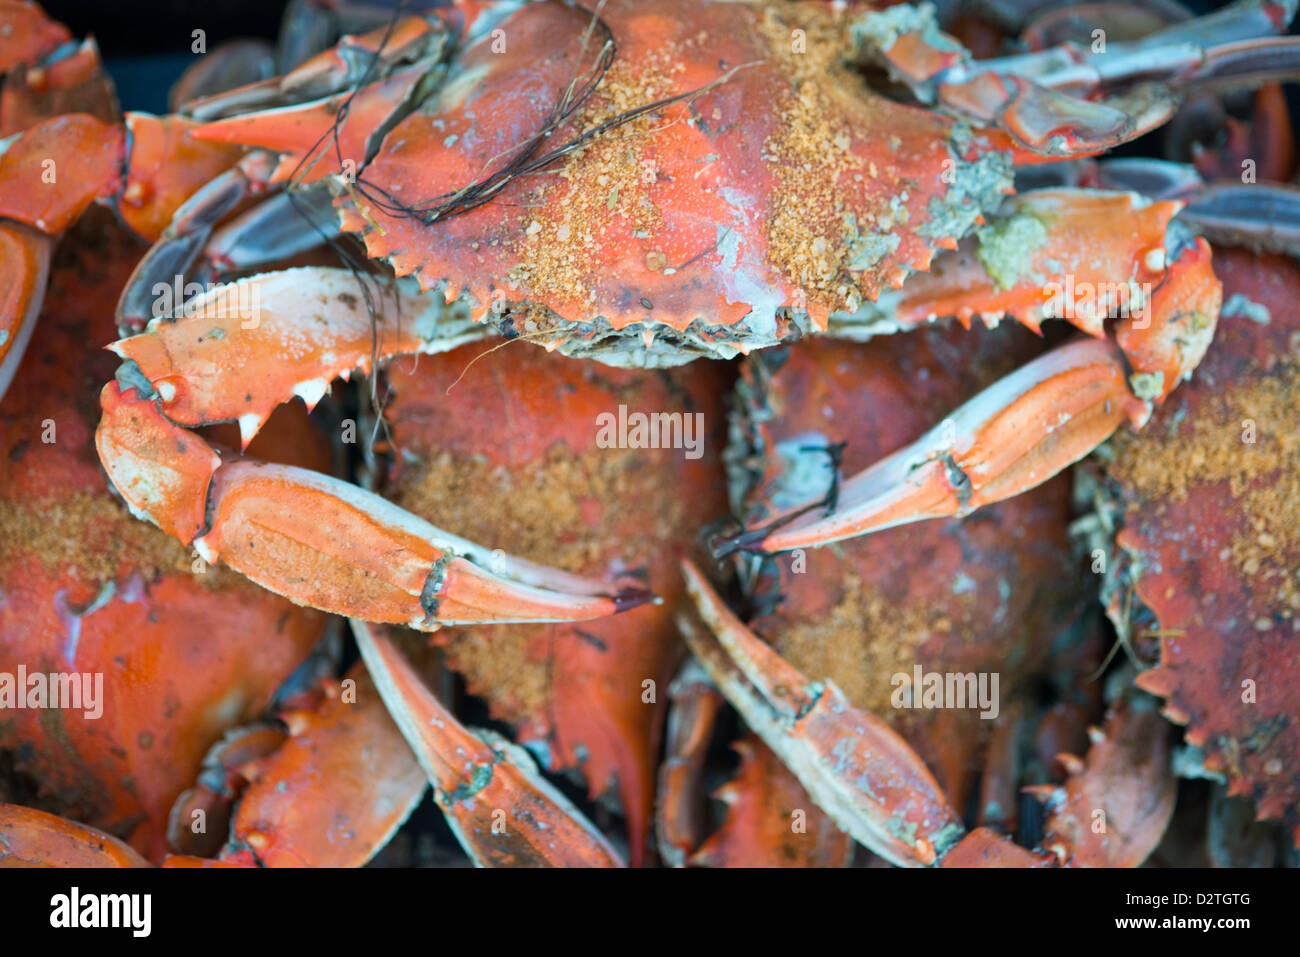 Los cangrejos cocidos con Old Bay seasoning en un muelle en la costa Foto de stock